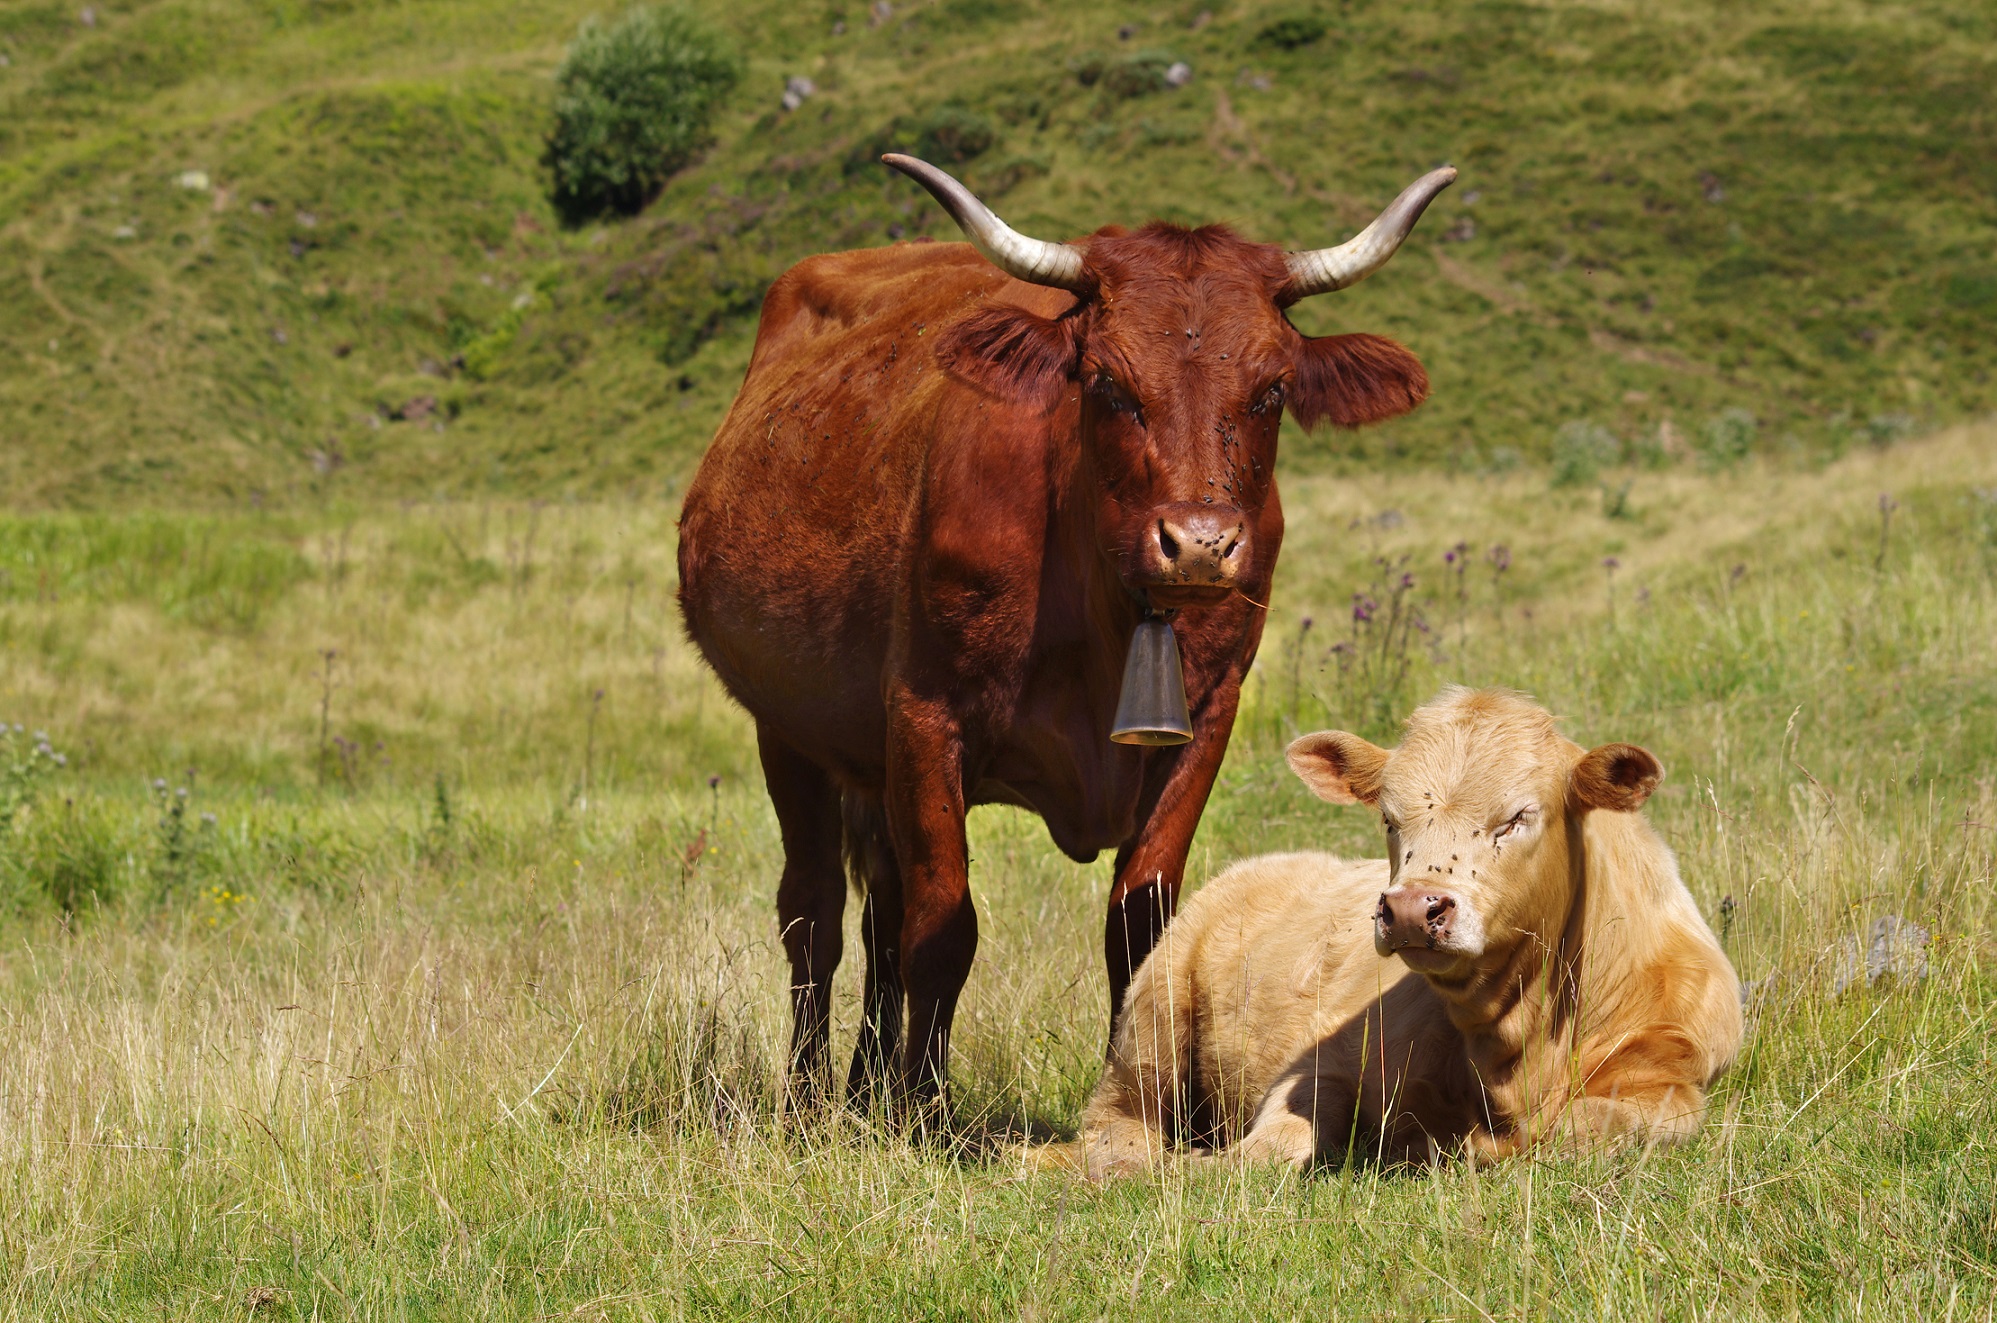 Le cas de vache folle dans les Ardennes est confirmé par le ministère de l'Agriculture. La vache décédée était une Salers, une vache auvergnate au poil acajou. © Fabien Monteil, Shutterstock